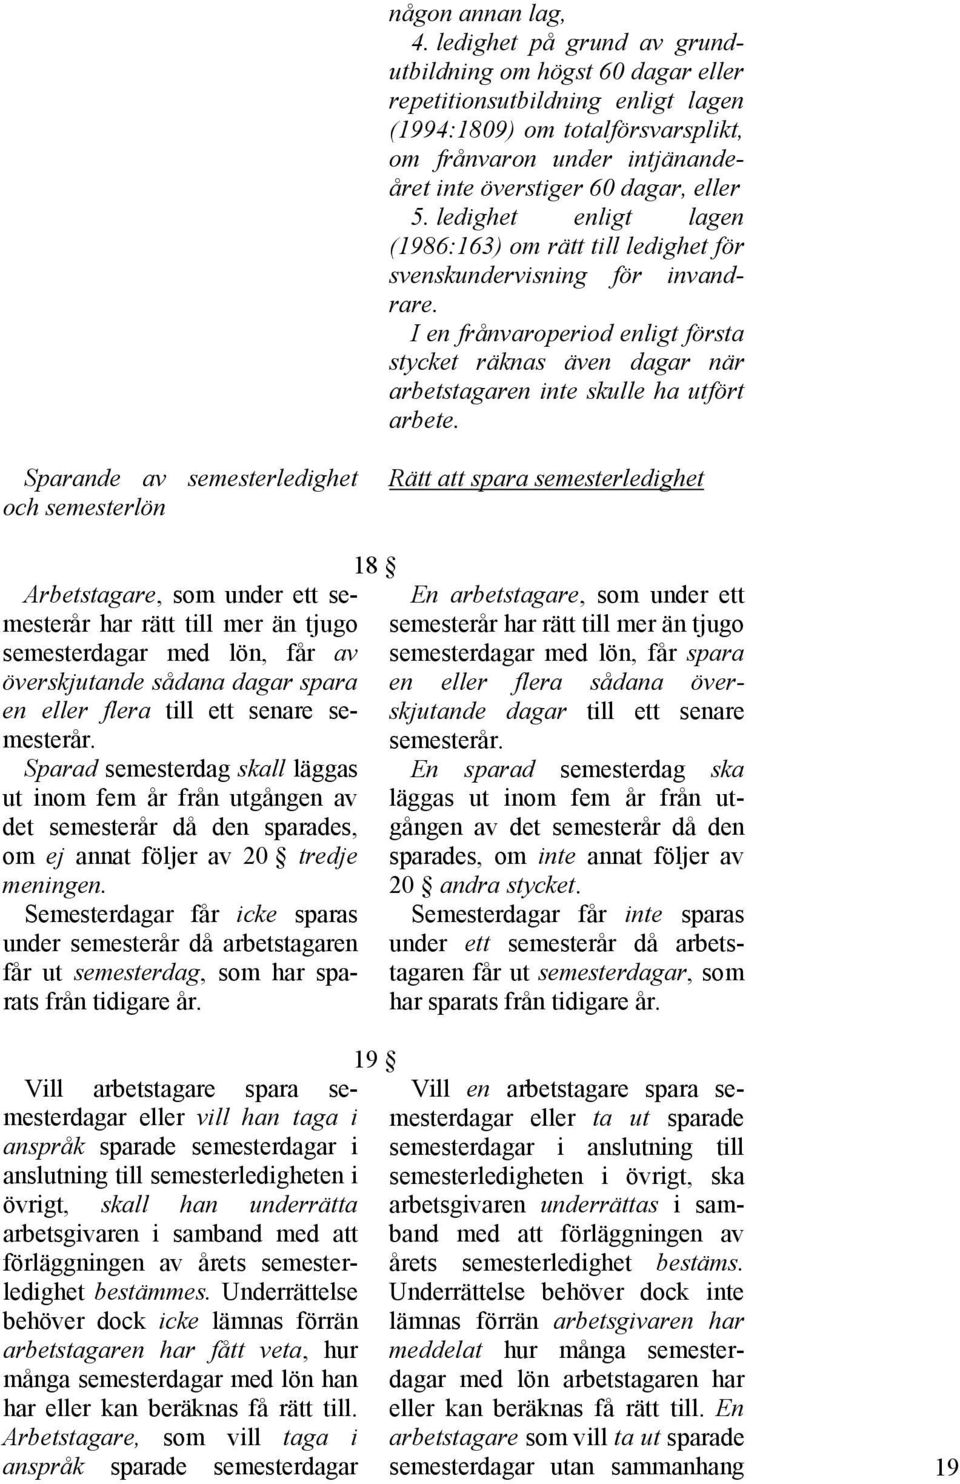 ledighet enligt lagen (1986:163) om rätt till ledighet för svenskundervisning för invandrare.